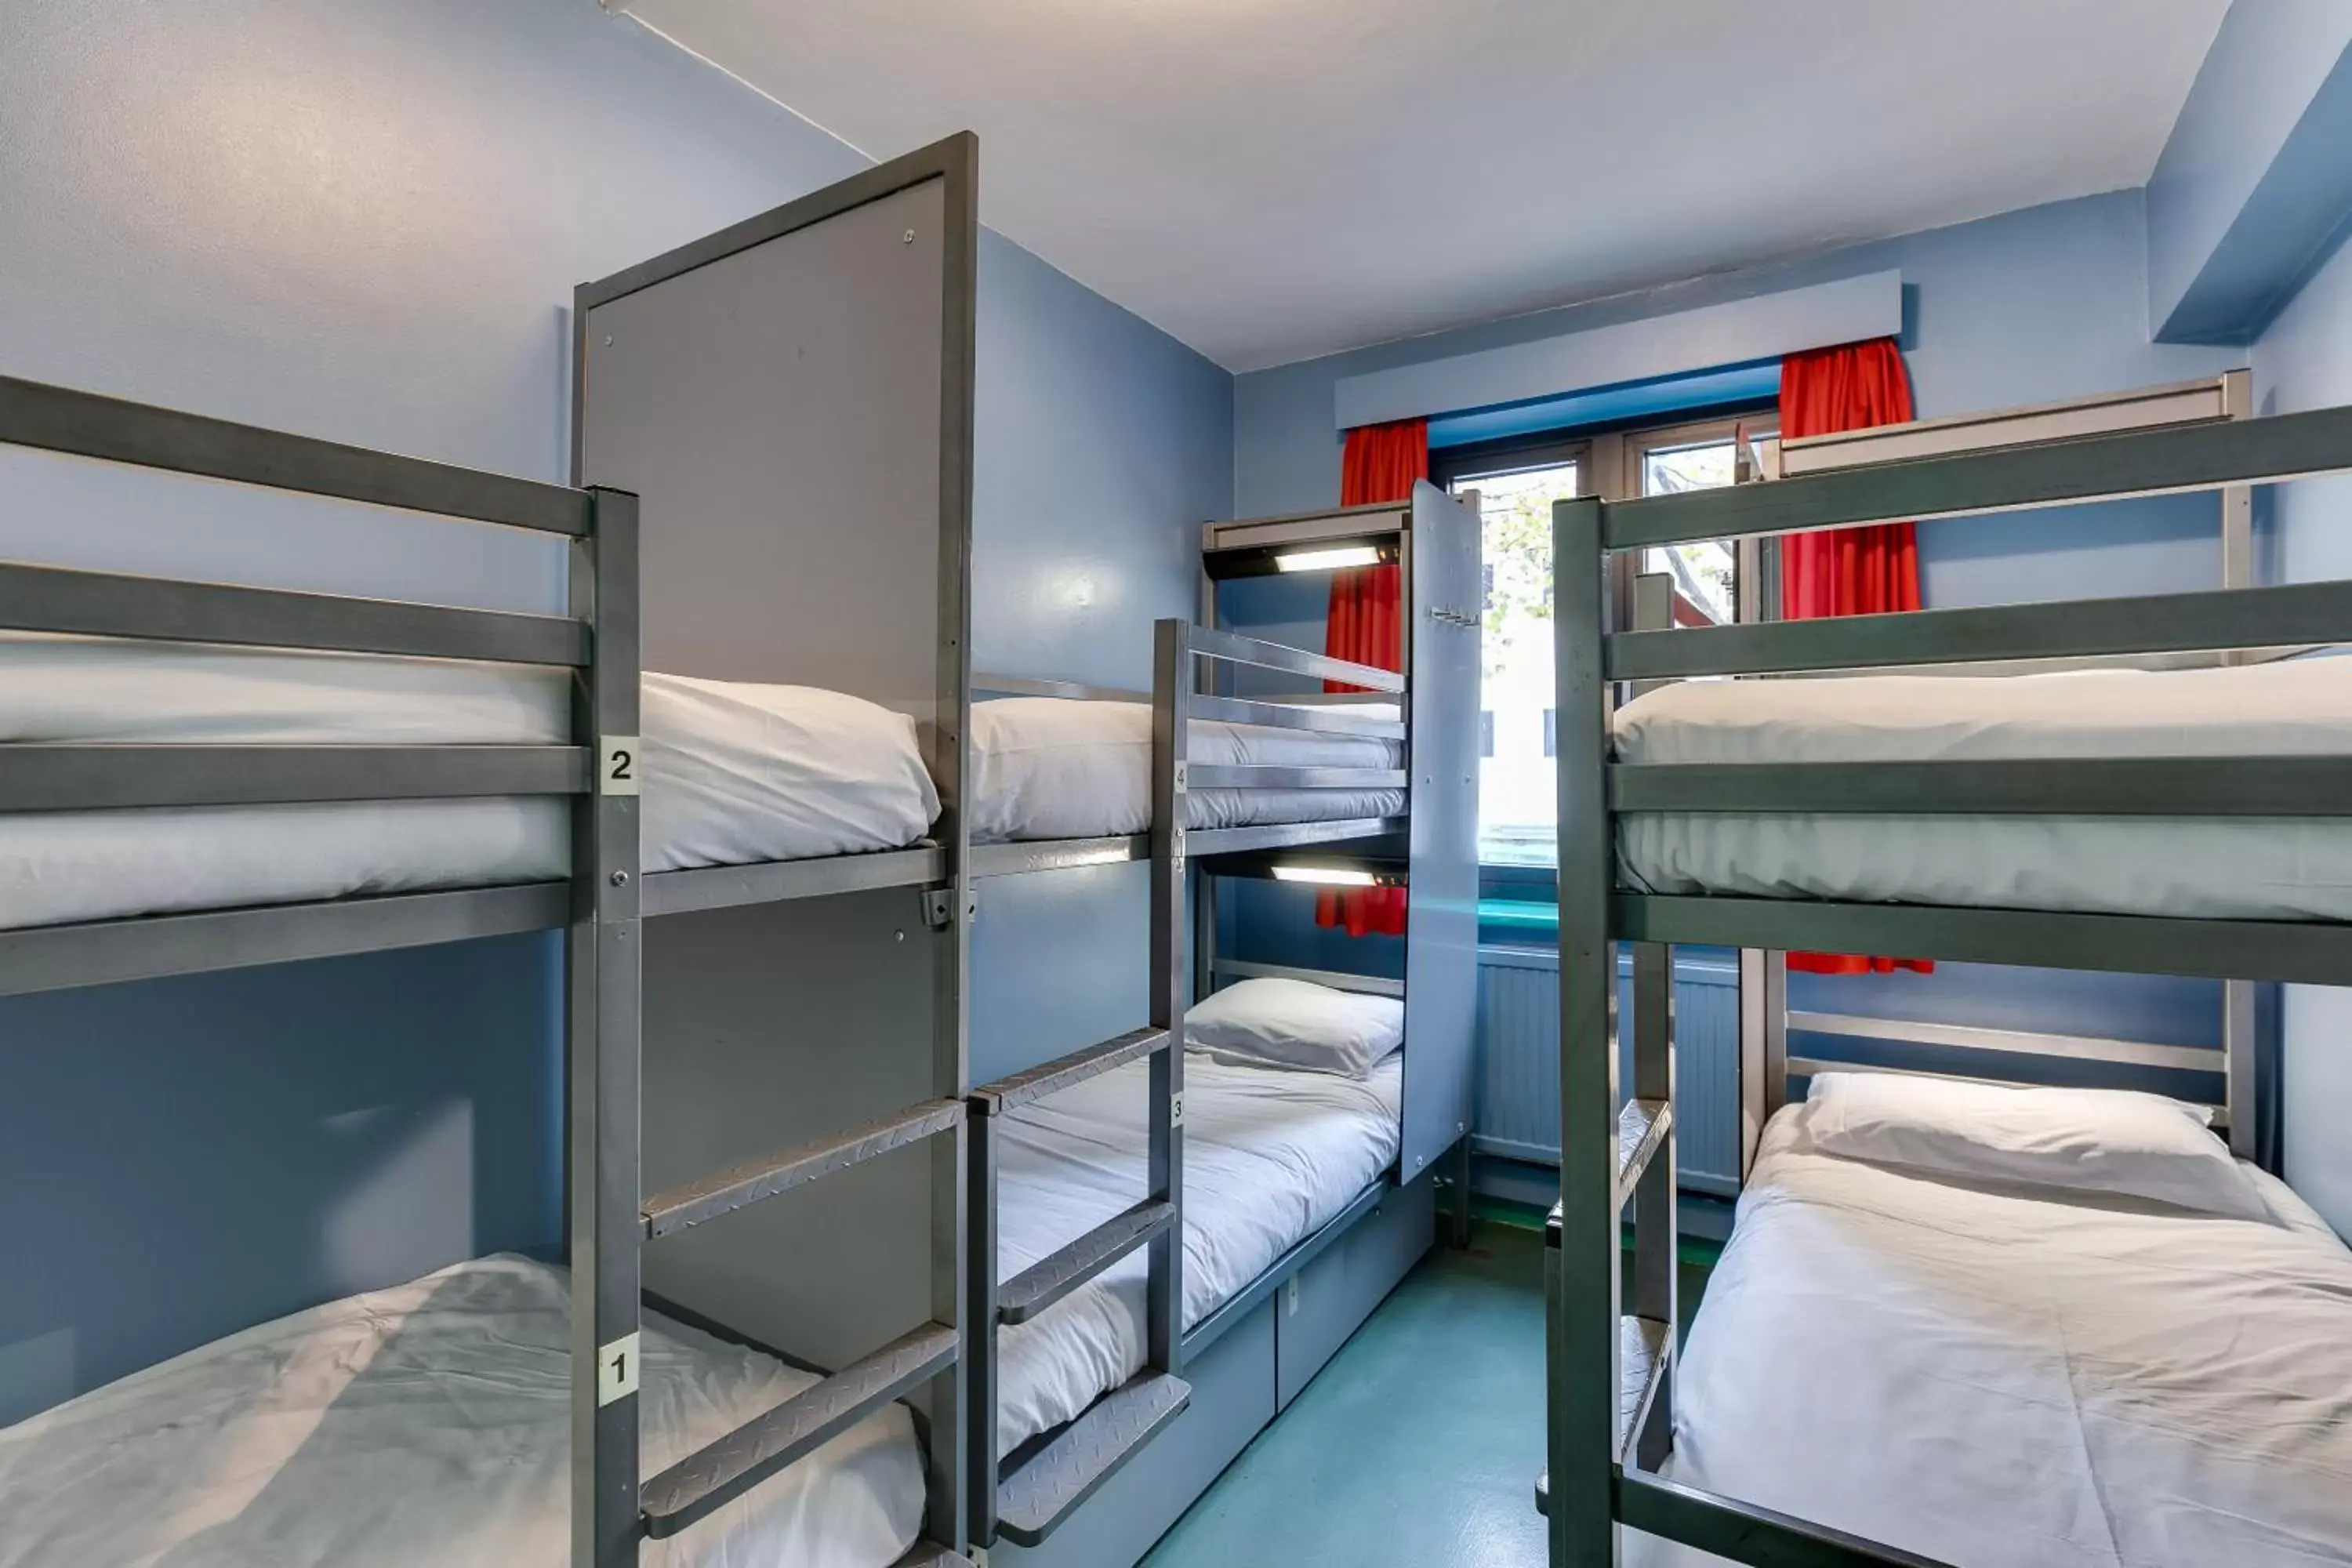 Bedroom, Bunk Bed in Clink261 Hostel